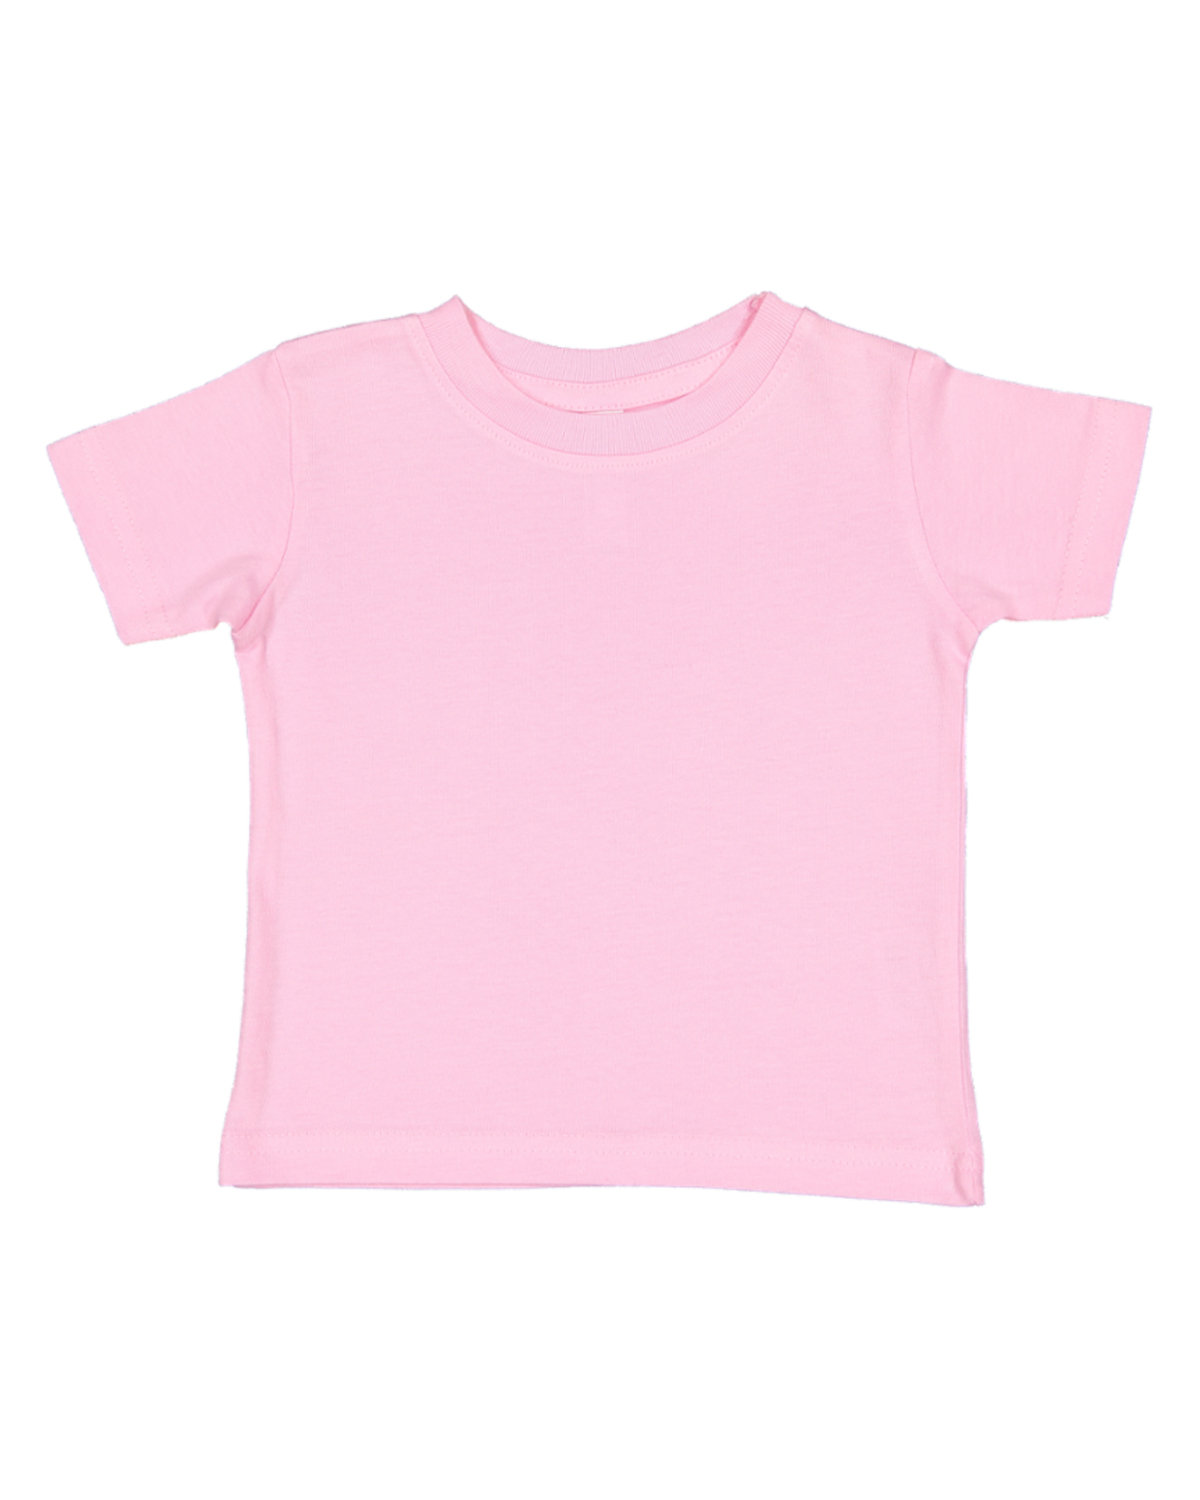 Rabbit Skins Infant Fine Jersey T-Shirt PINK 